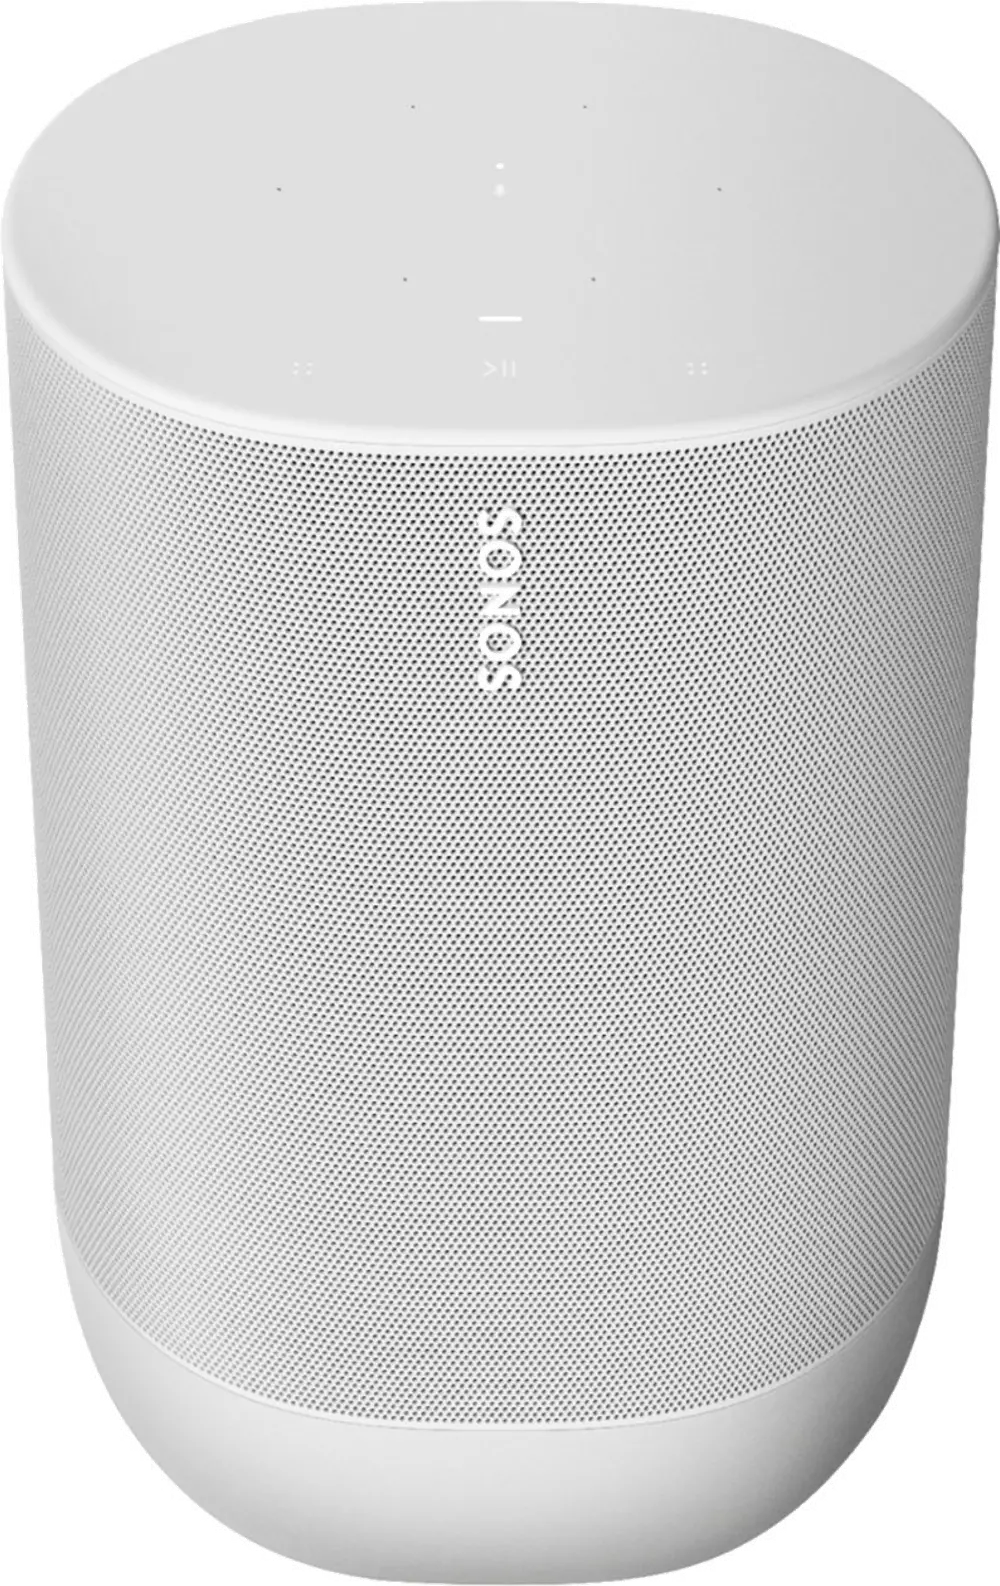 MOVE-WHITE Sonos Move Portable Speaker - White-1